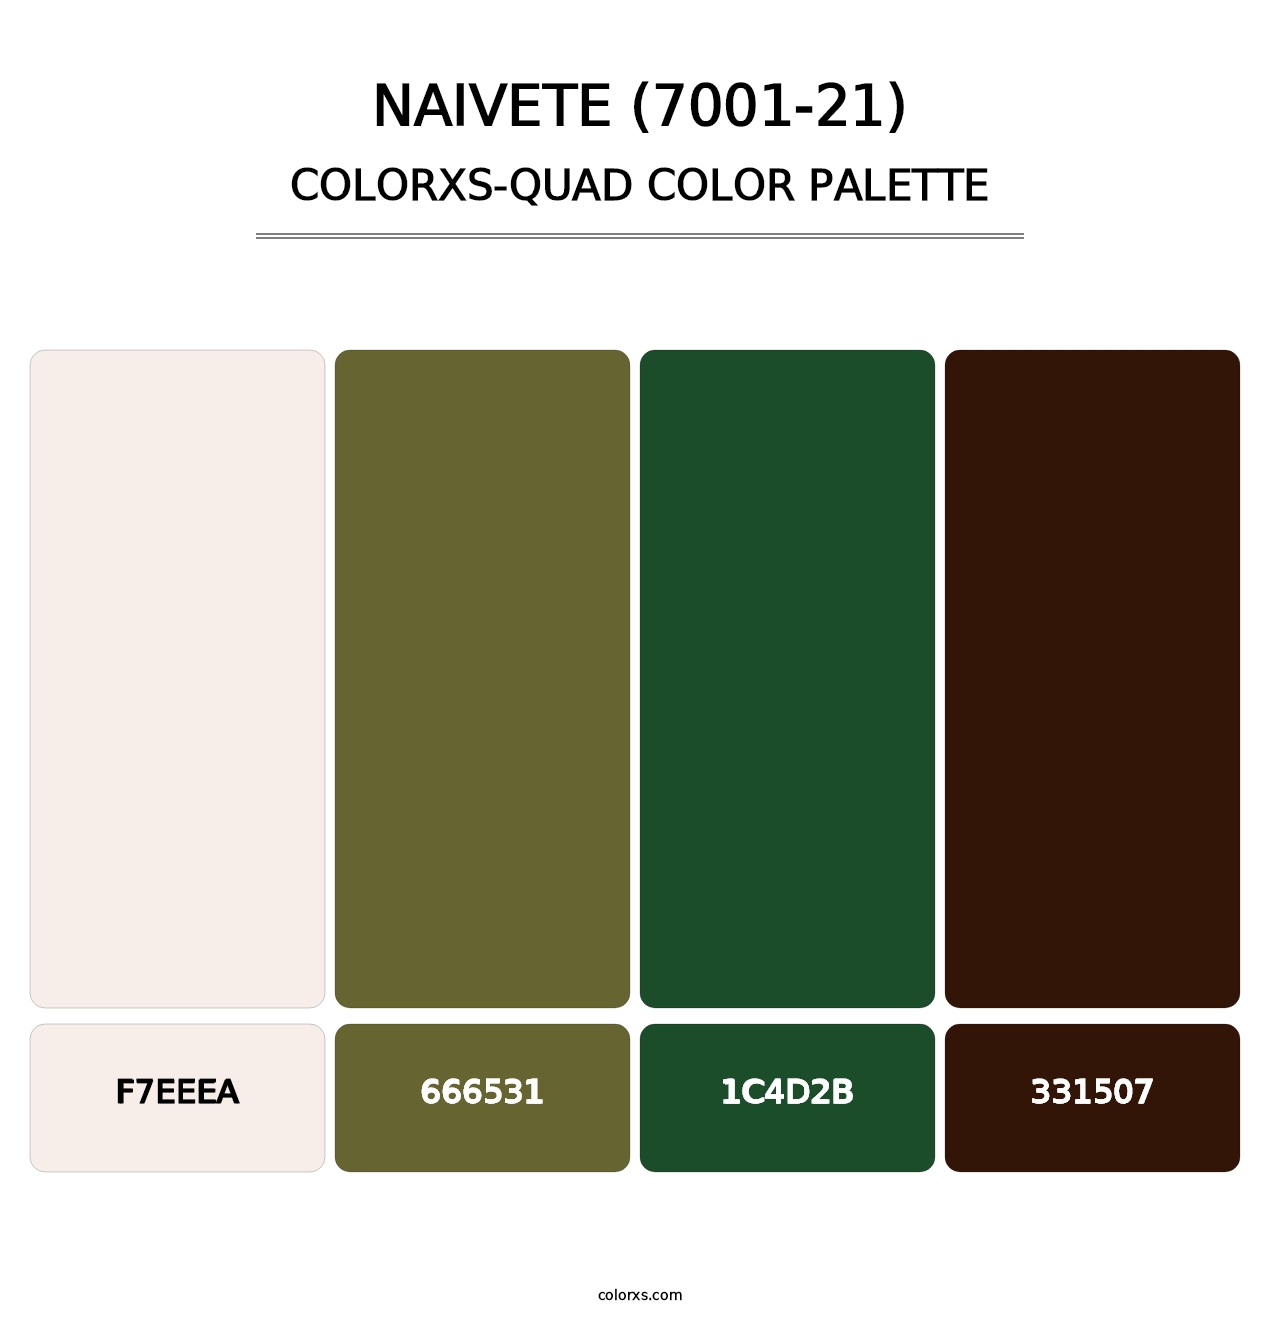 Naivete (7001-21) - Colorxs Quad Palette